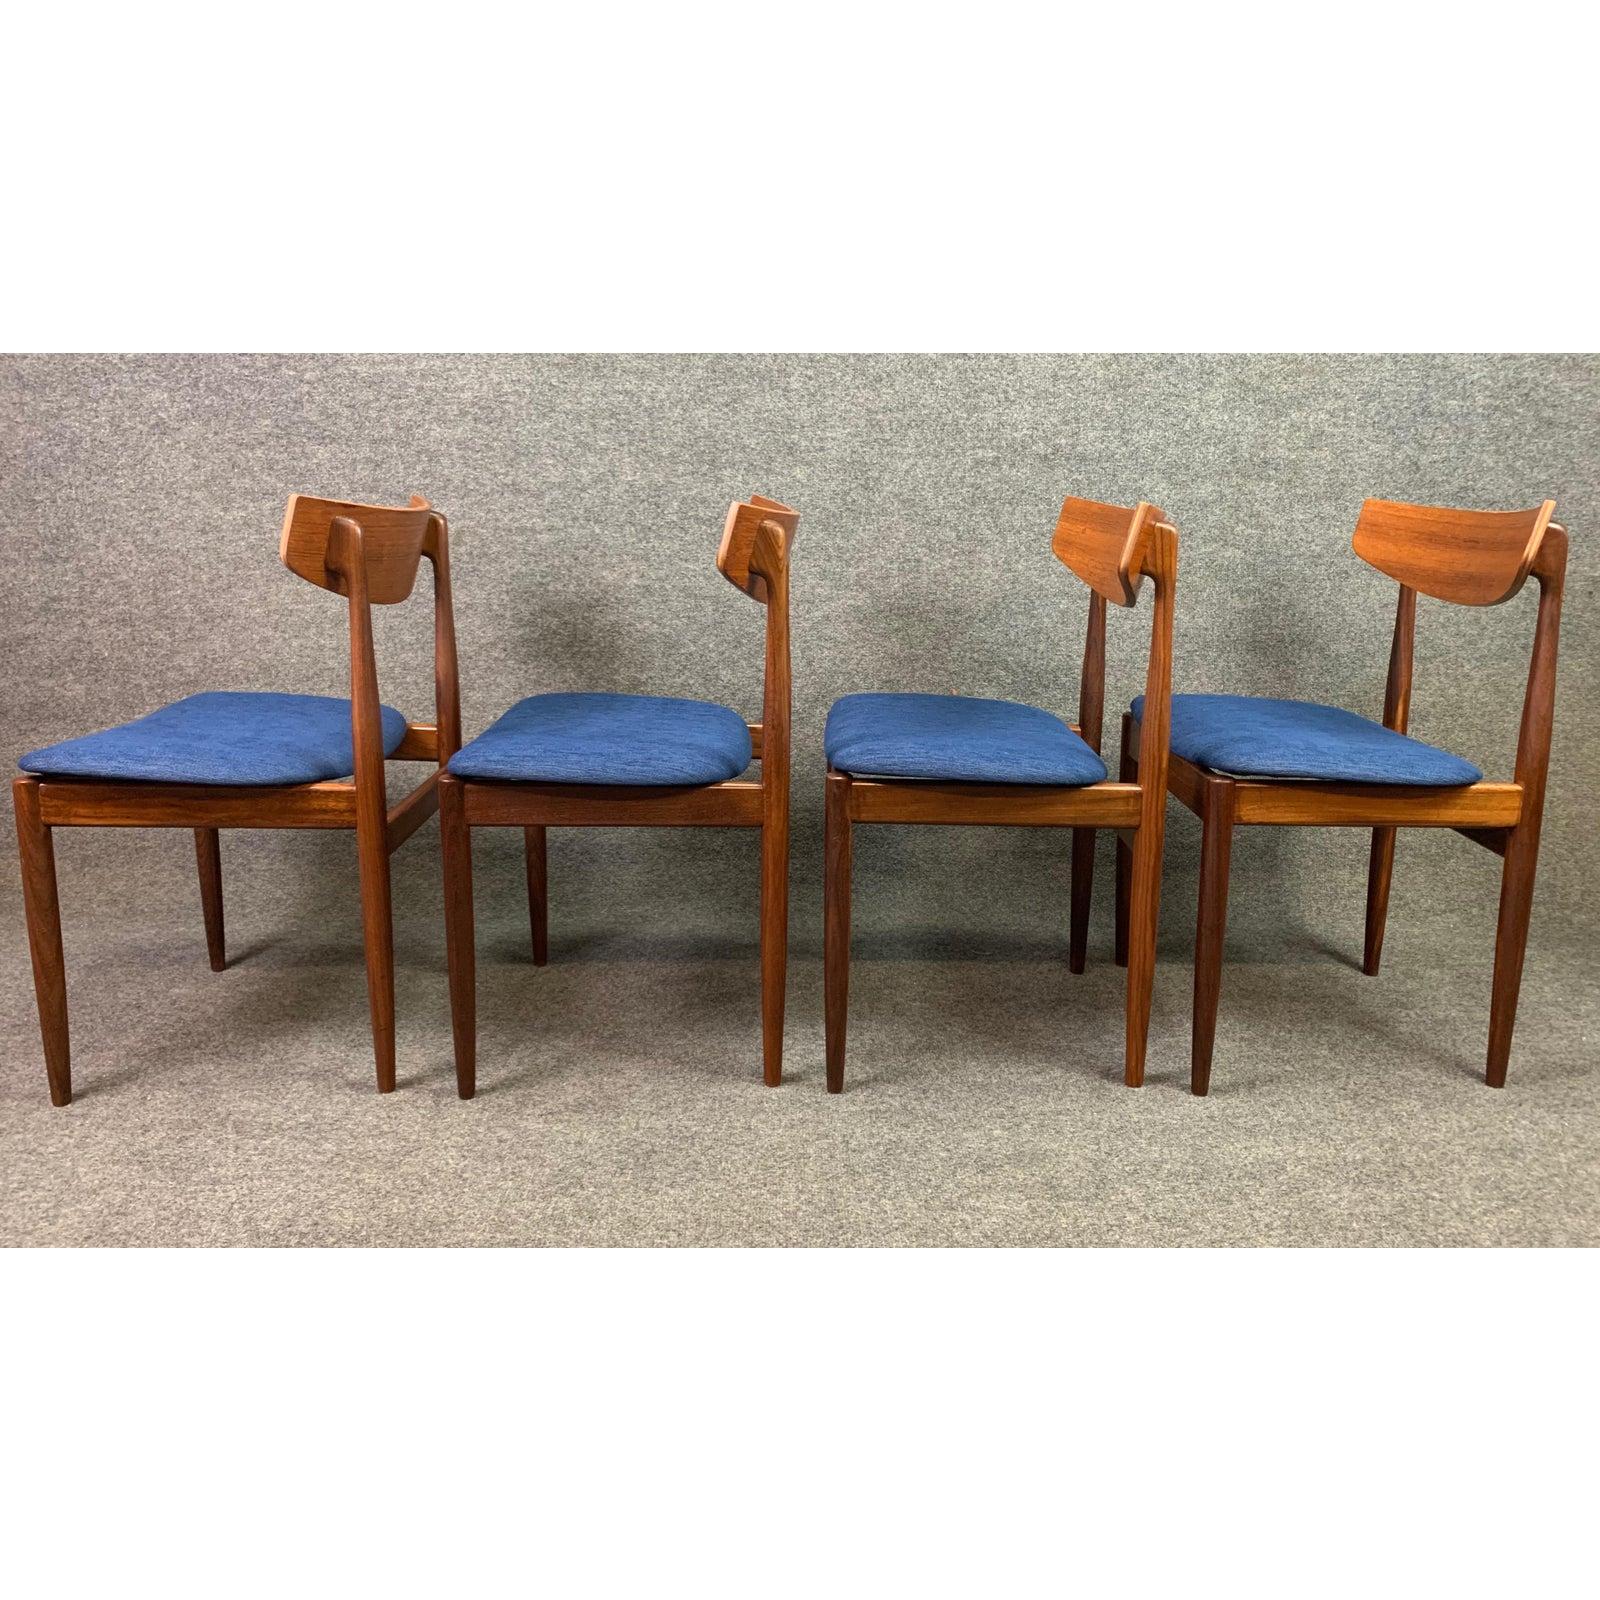 Set of 4 Vintage British Midcentury Teak Dining Chairs by Kofod Larsen & G Plan 3